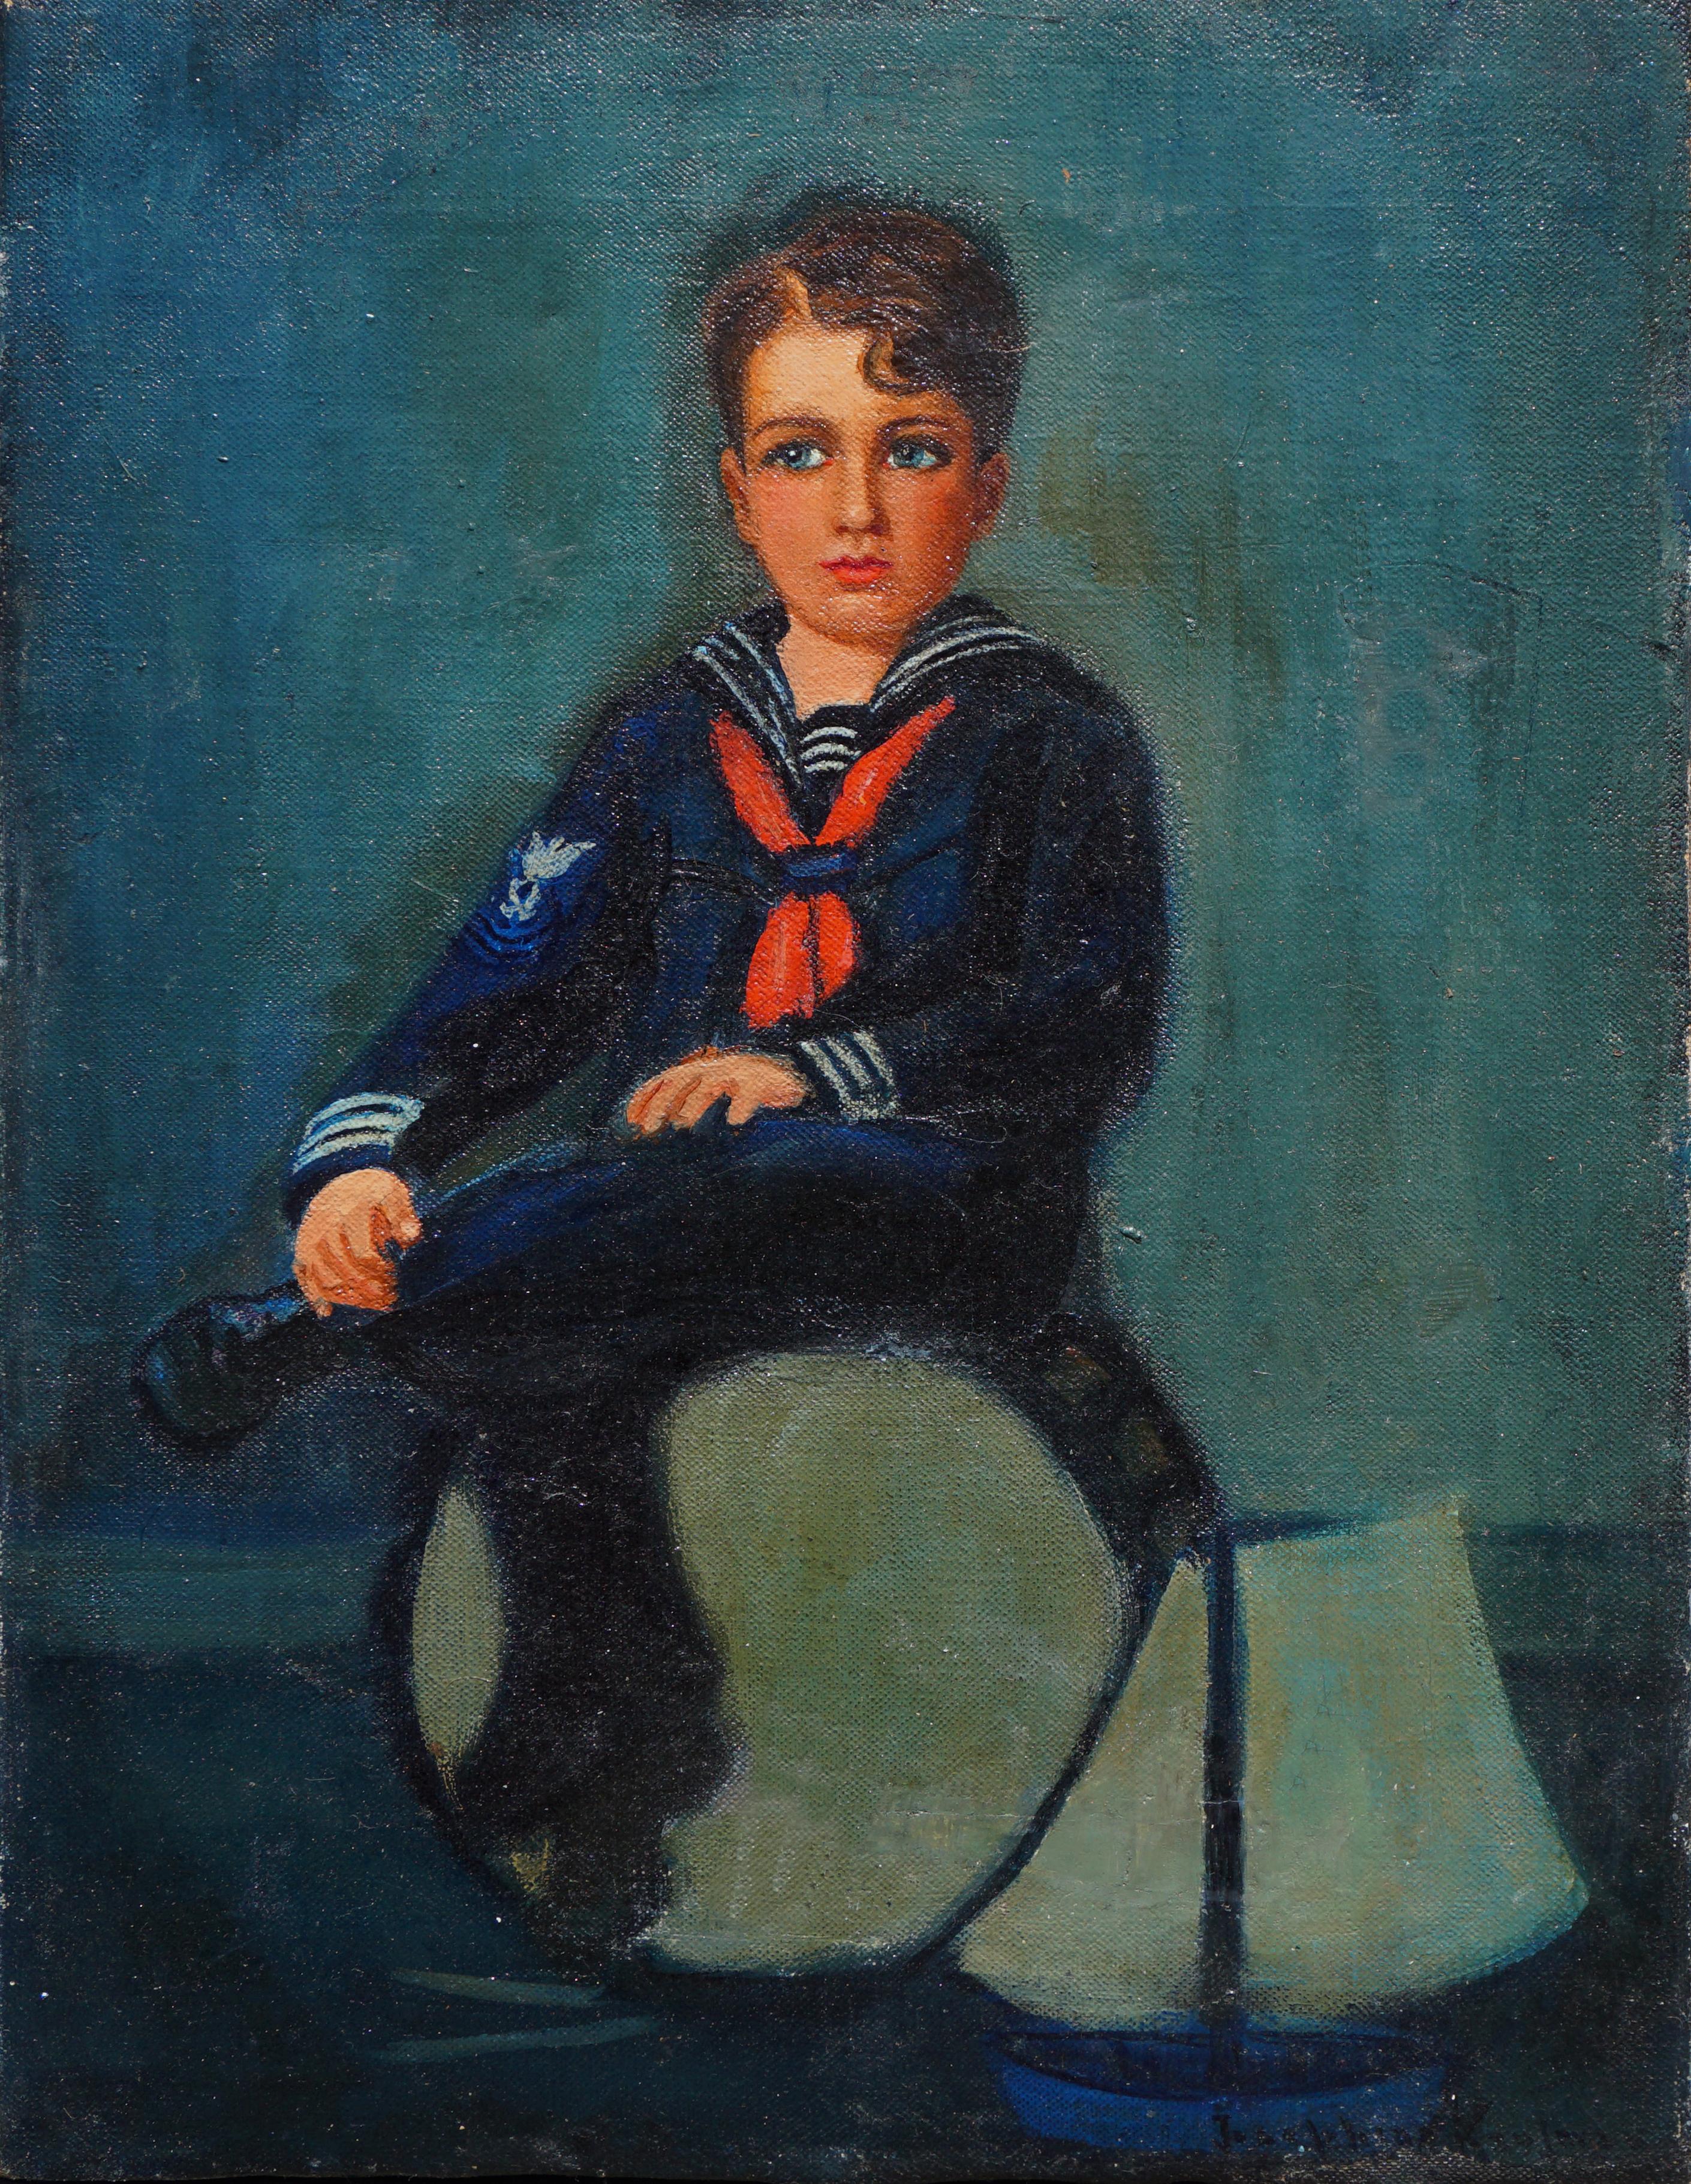 Josephine Kaufmann Portrait Painting – Porträt eines Matrosenjungen aus dem späten 19. Jahrhundert